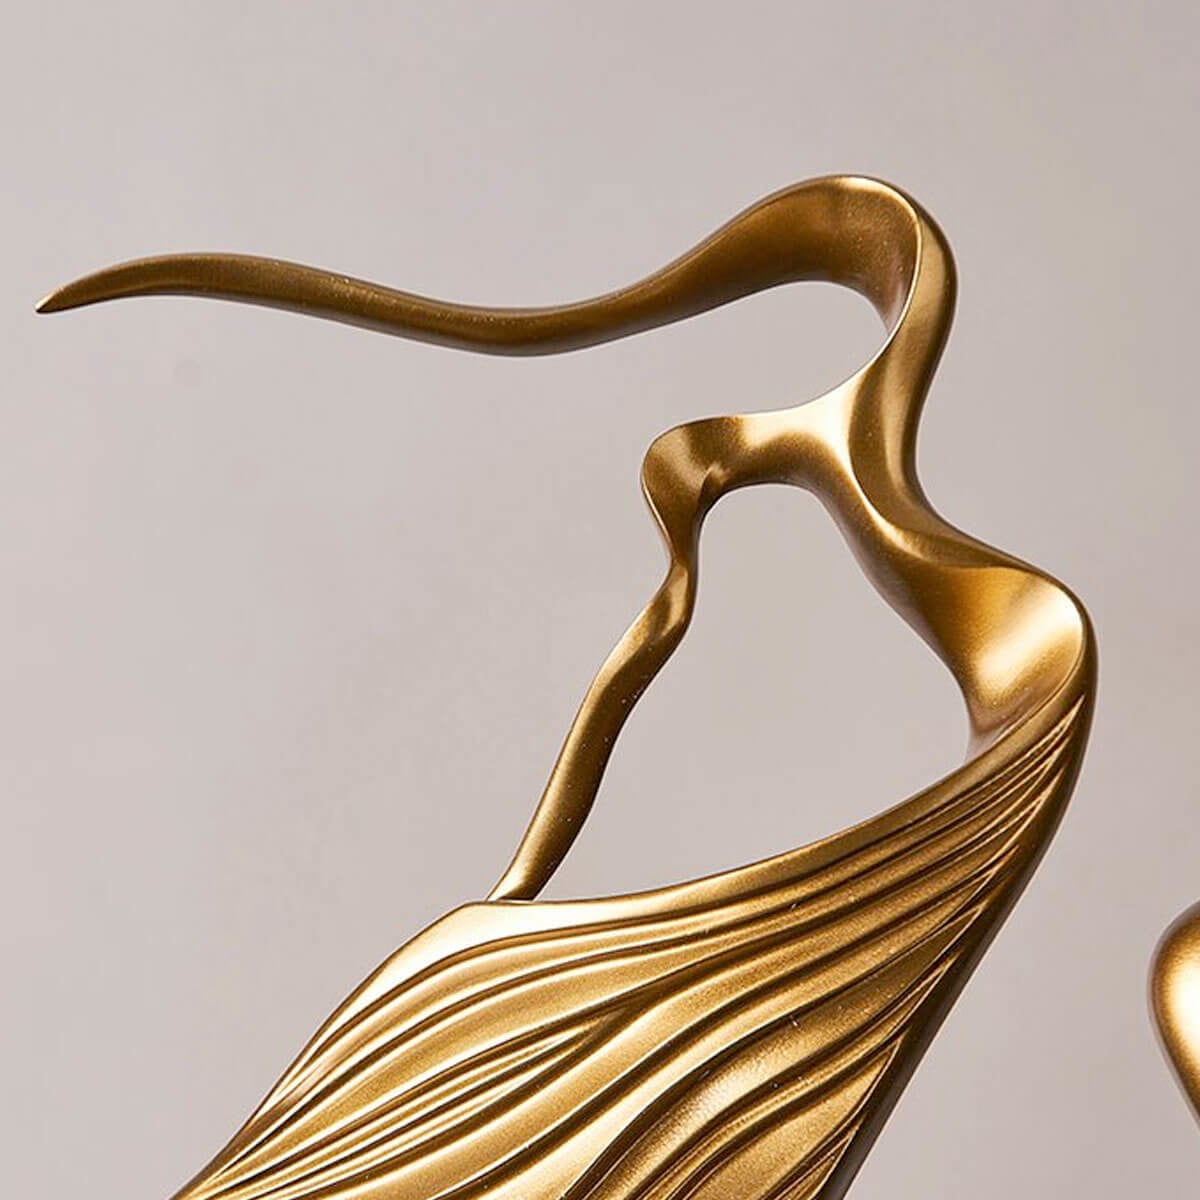 Elegant Figures Abstract Character Statue Sculpture Golden Art